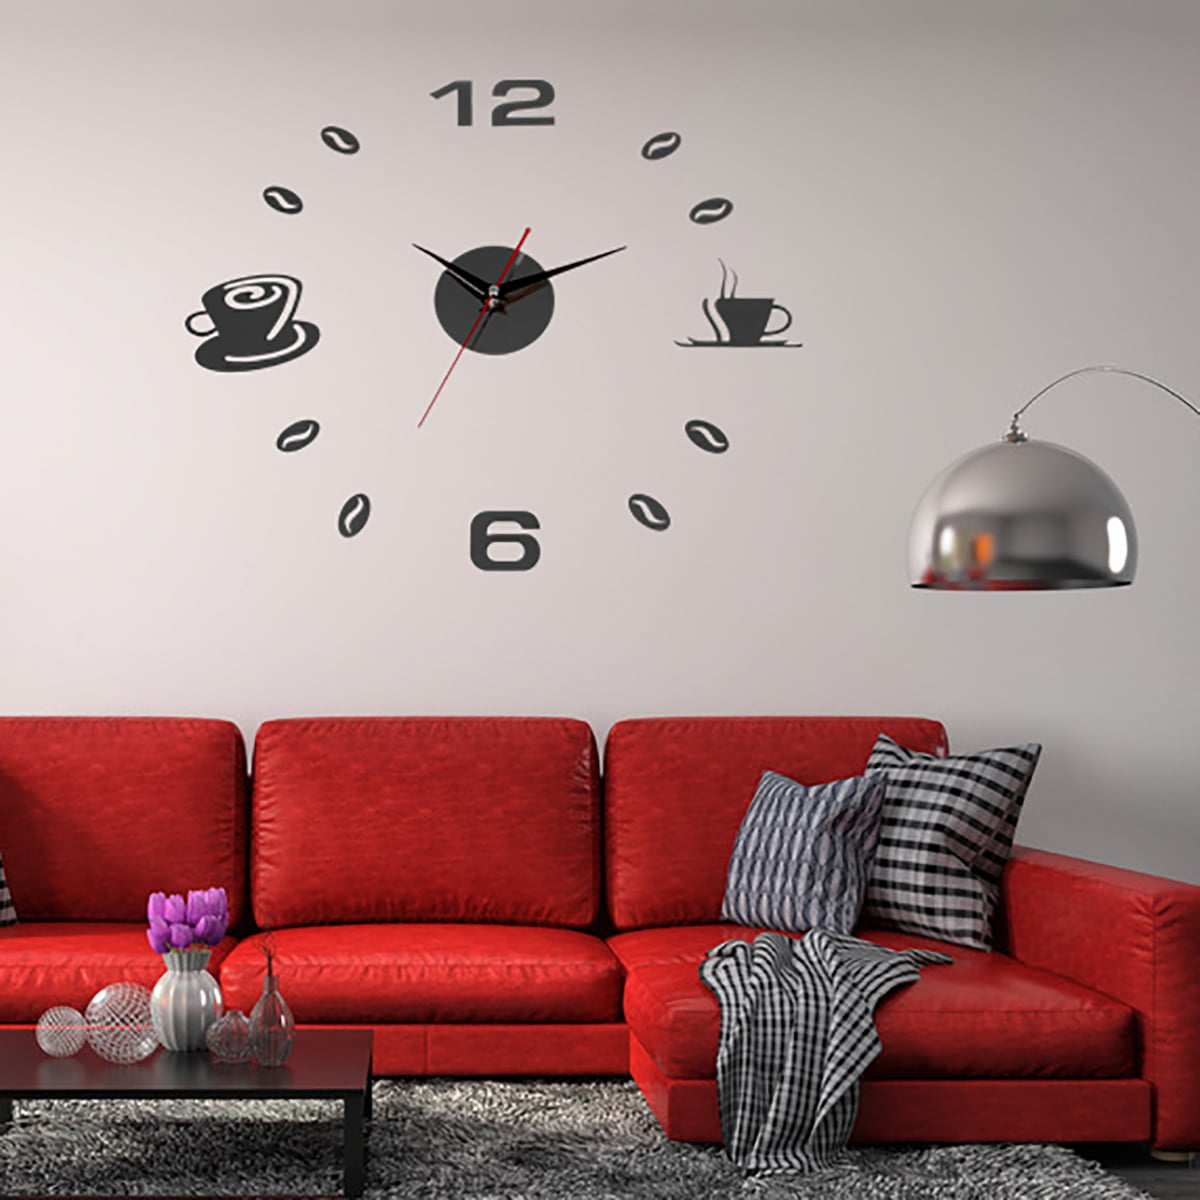 Diy Large Wall Clock - 2019 New DIY Large Wall Clock Modern Design